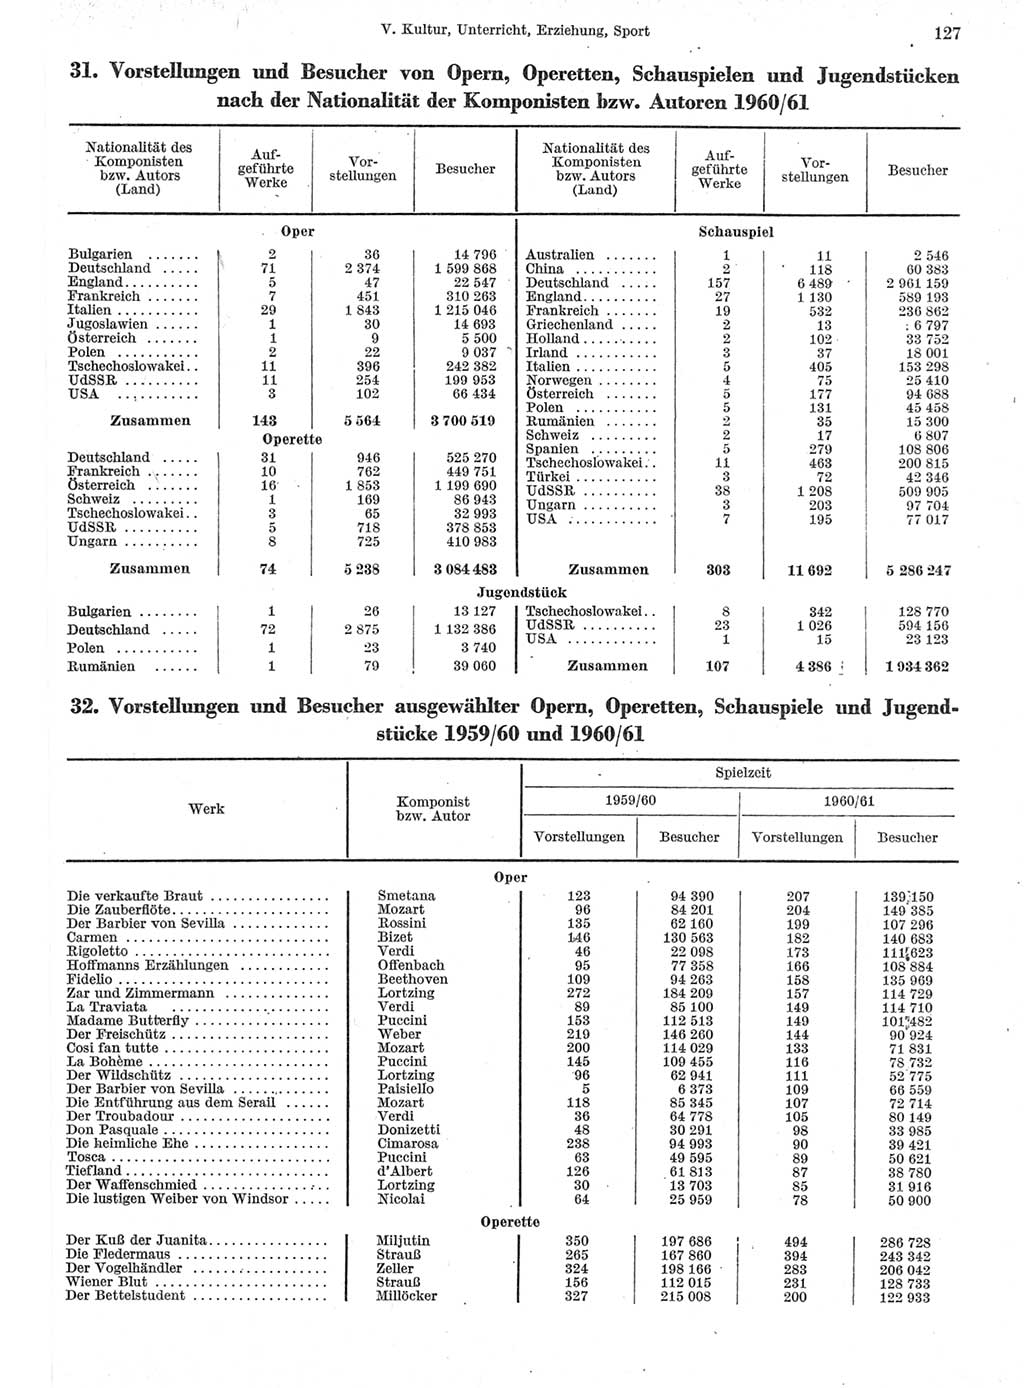 Statistisches Jahrbuch der Deutschen Demokratischen Republik (DDR) 1962, Seite 127 (Stat. Jb. DDR 1962, S. 127)